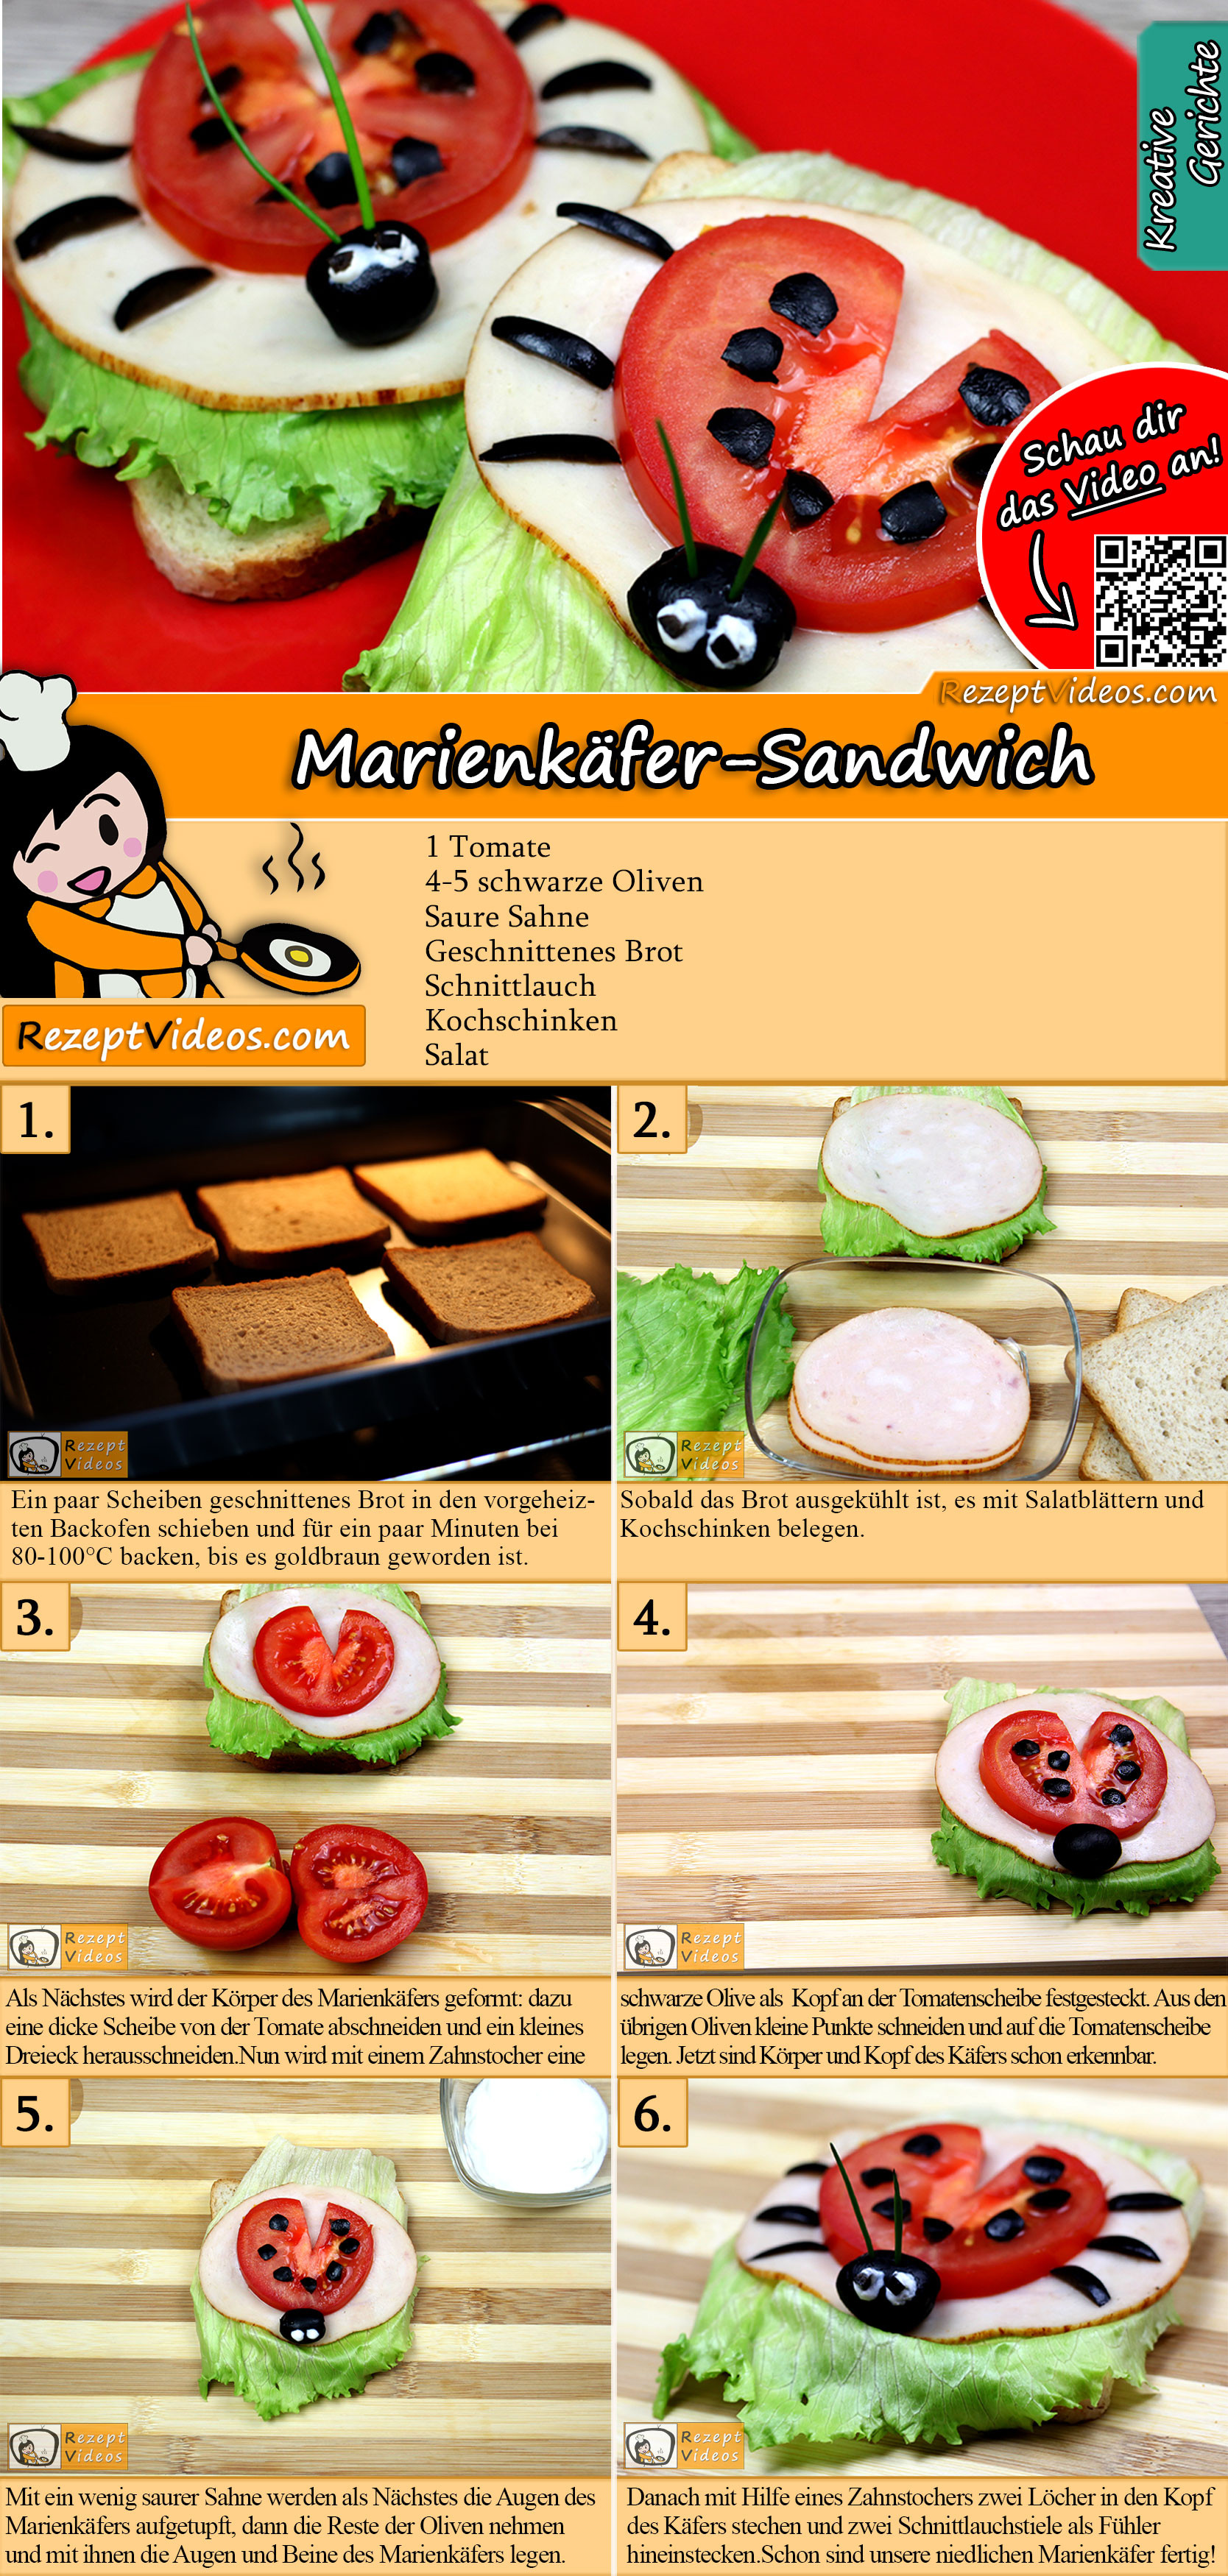 Marienkäfer-Sandwich Rezept mit Video